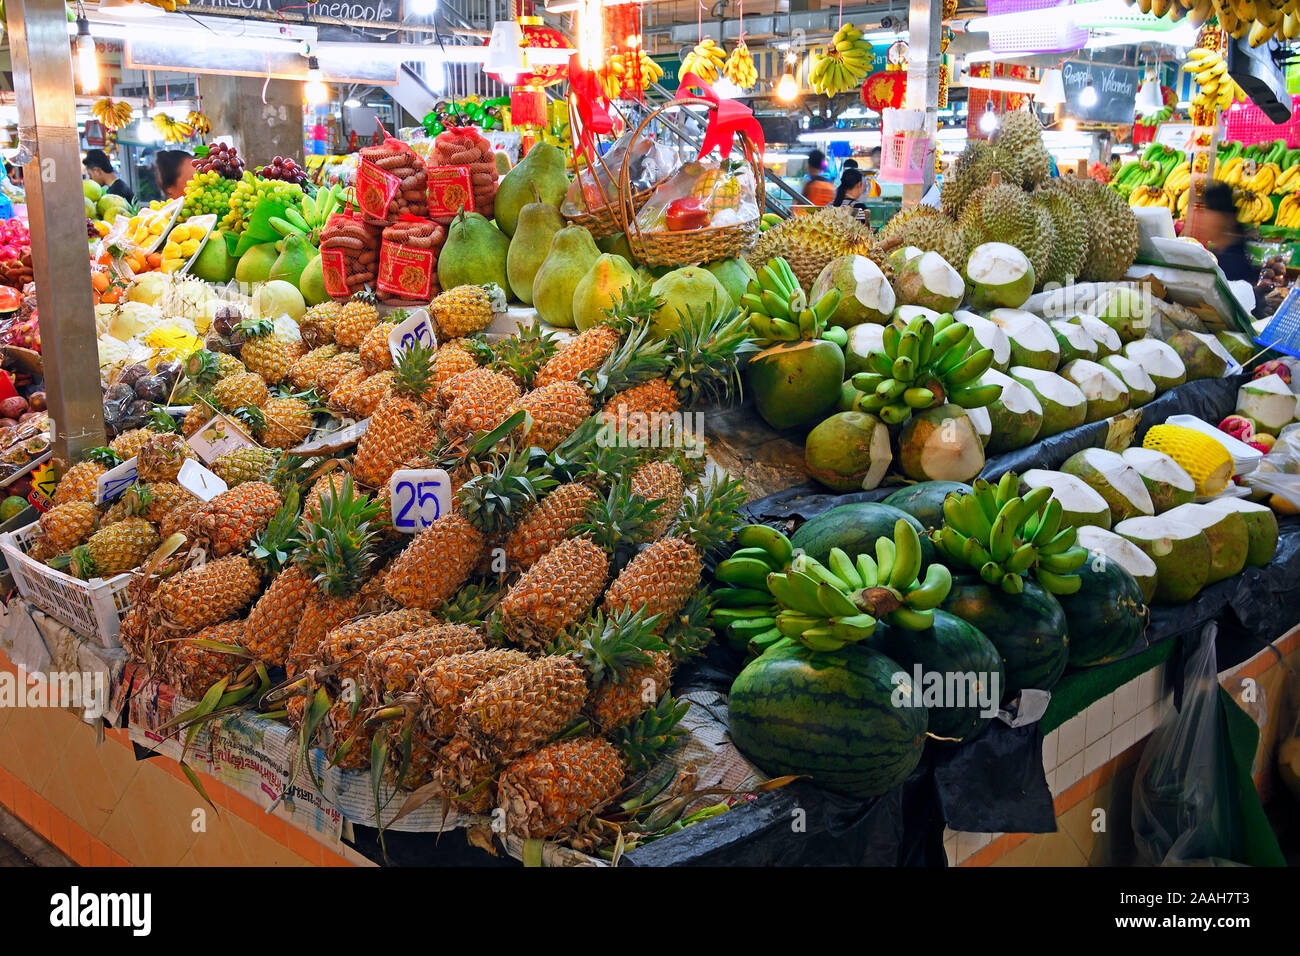 typische Stände mit riesiger Auswahl an frischem Obst und Gemüse auf dem Banzaan fresh market, Patong Beach, Phuket, Thailand Stock Photo